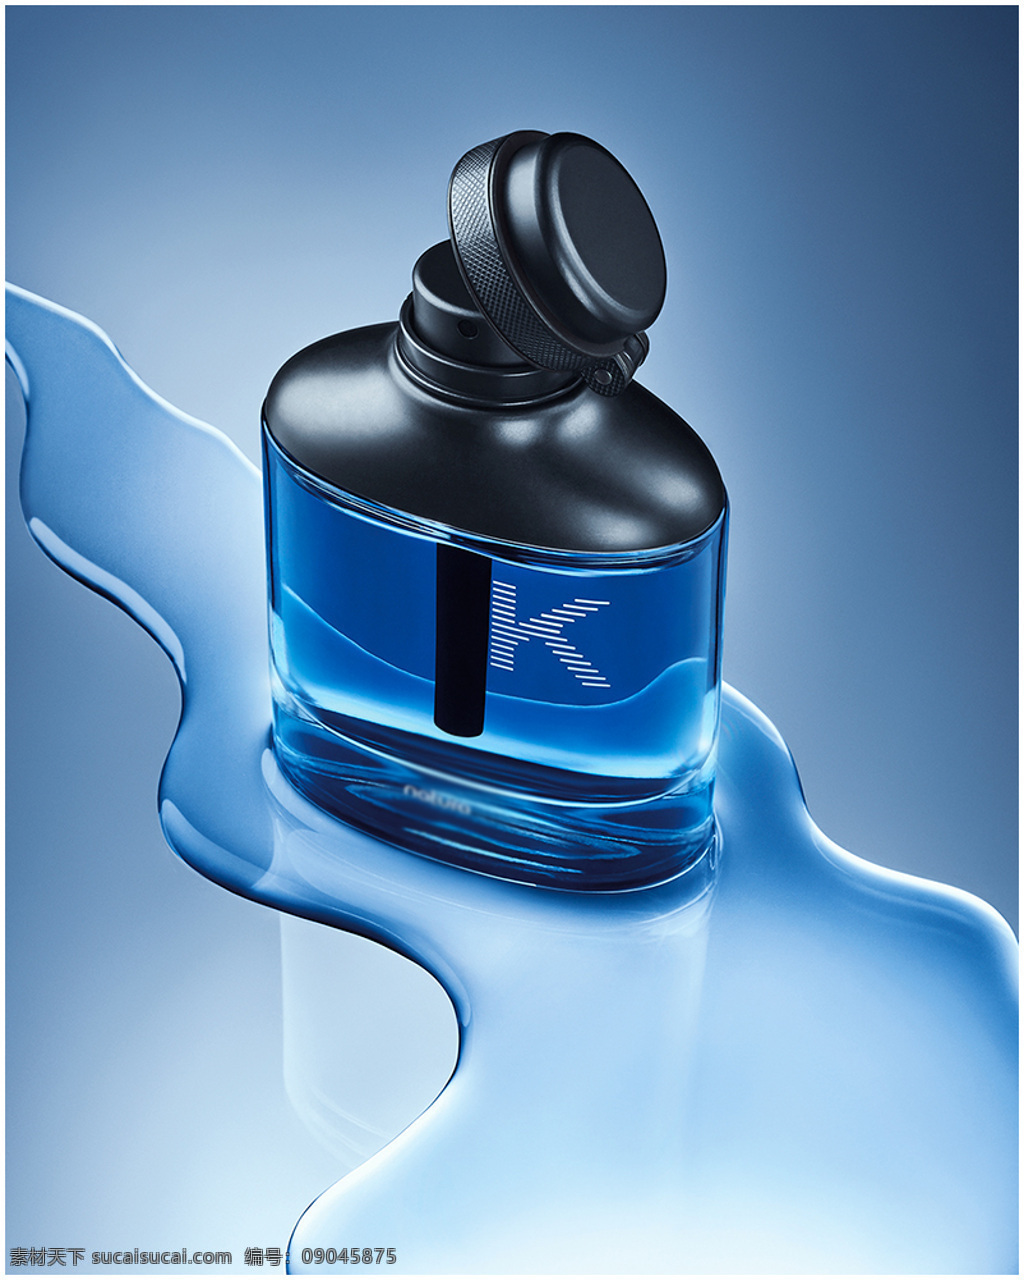 透明 玻璃 香水瓶 产品 蓝色 容器